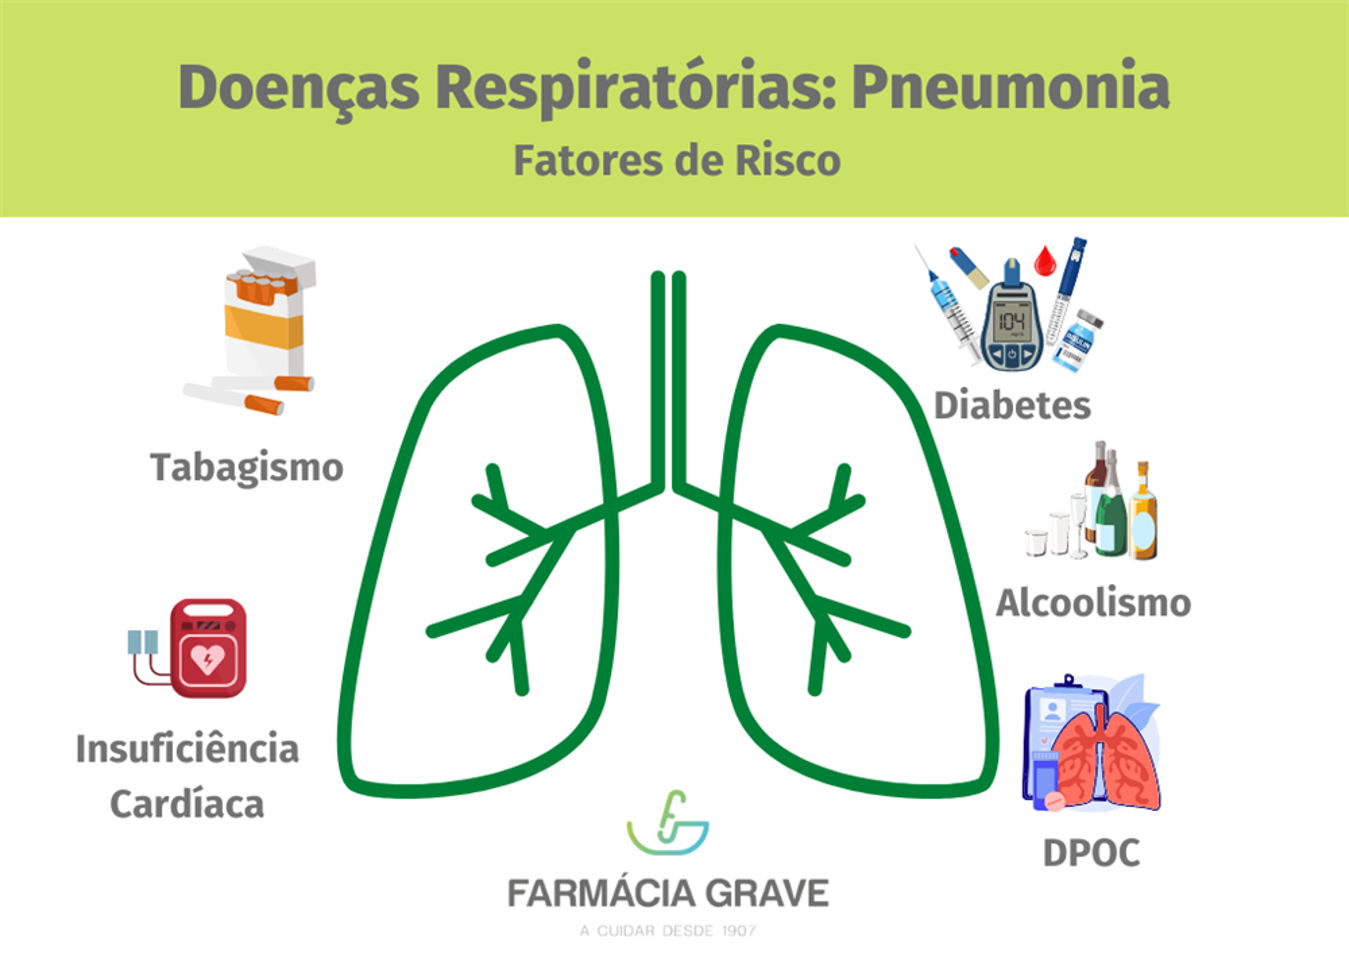 Doenças Respiratórias: Pneumonia